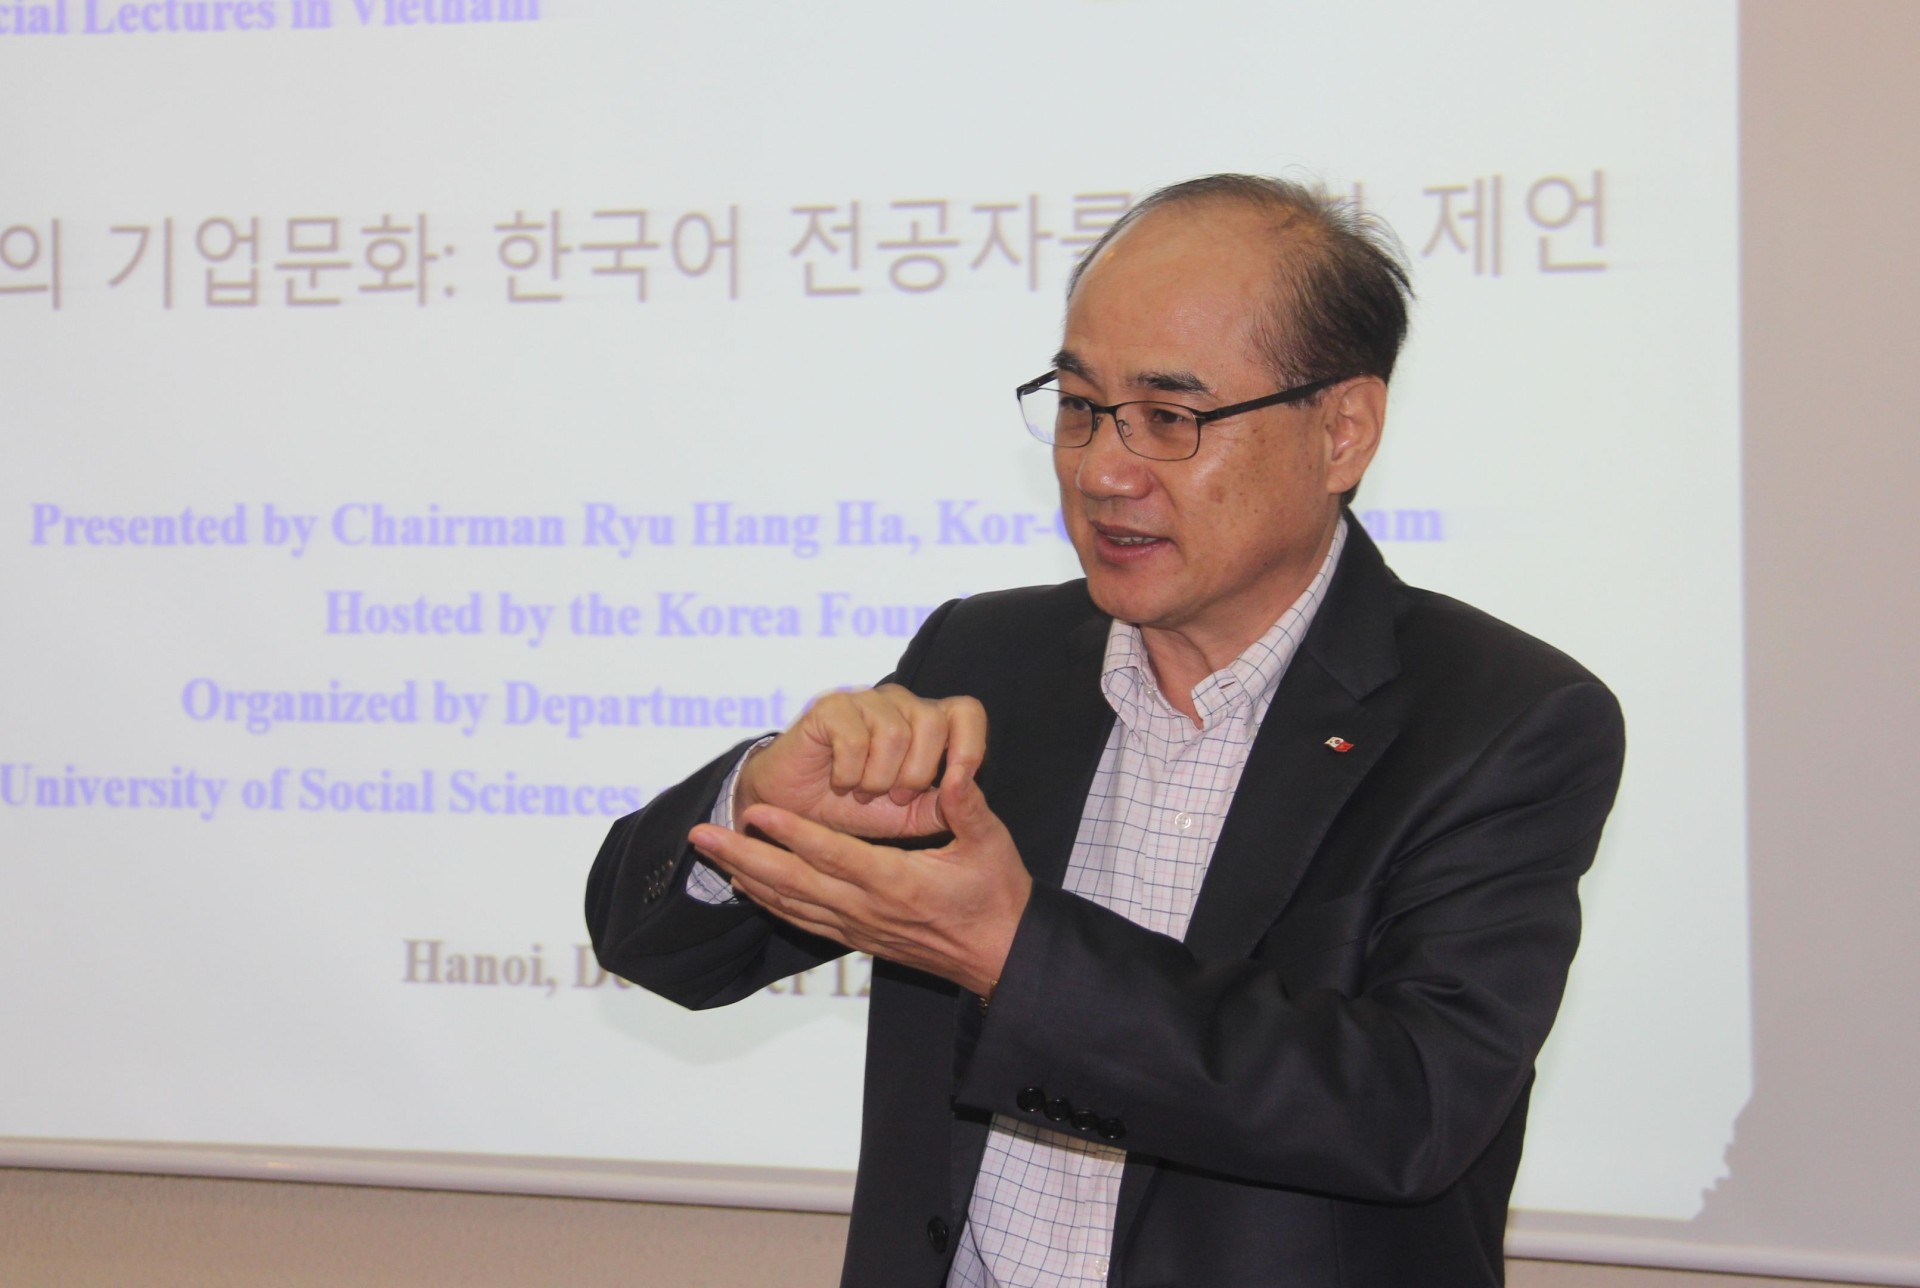 Thuyết trình về văn hoá doanh nghiệp Hàn Quốc